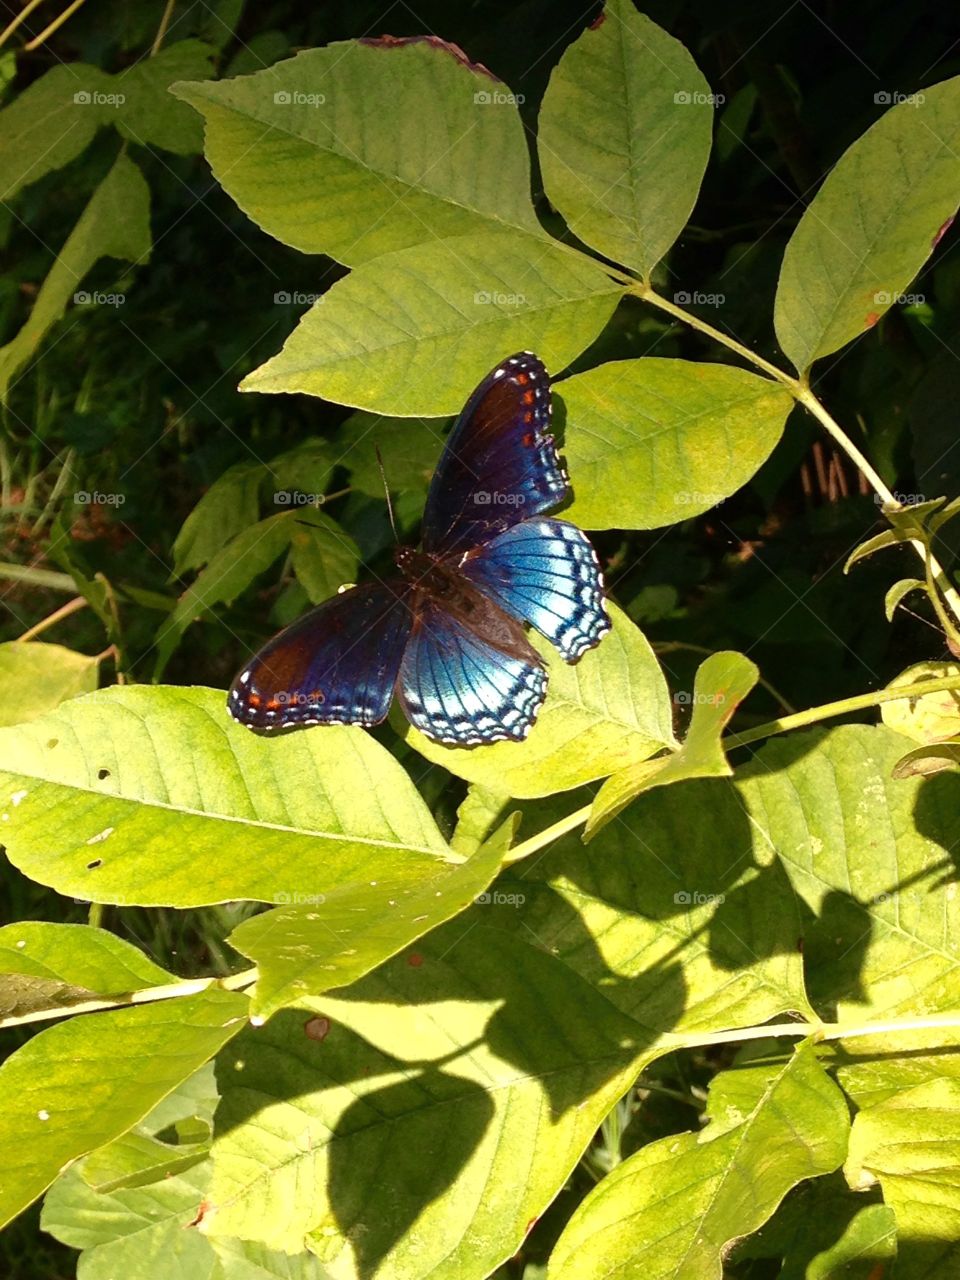 Butterfly friend